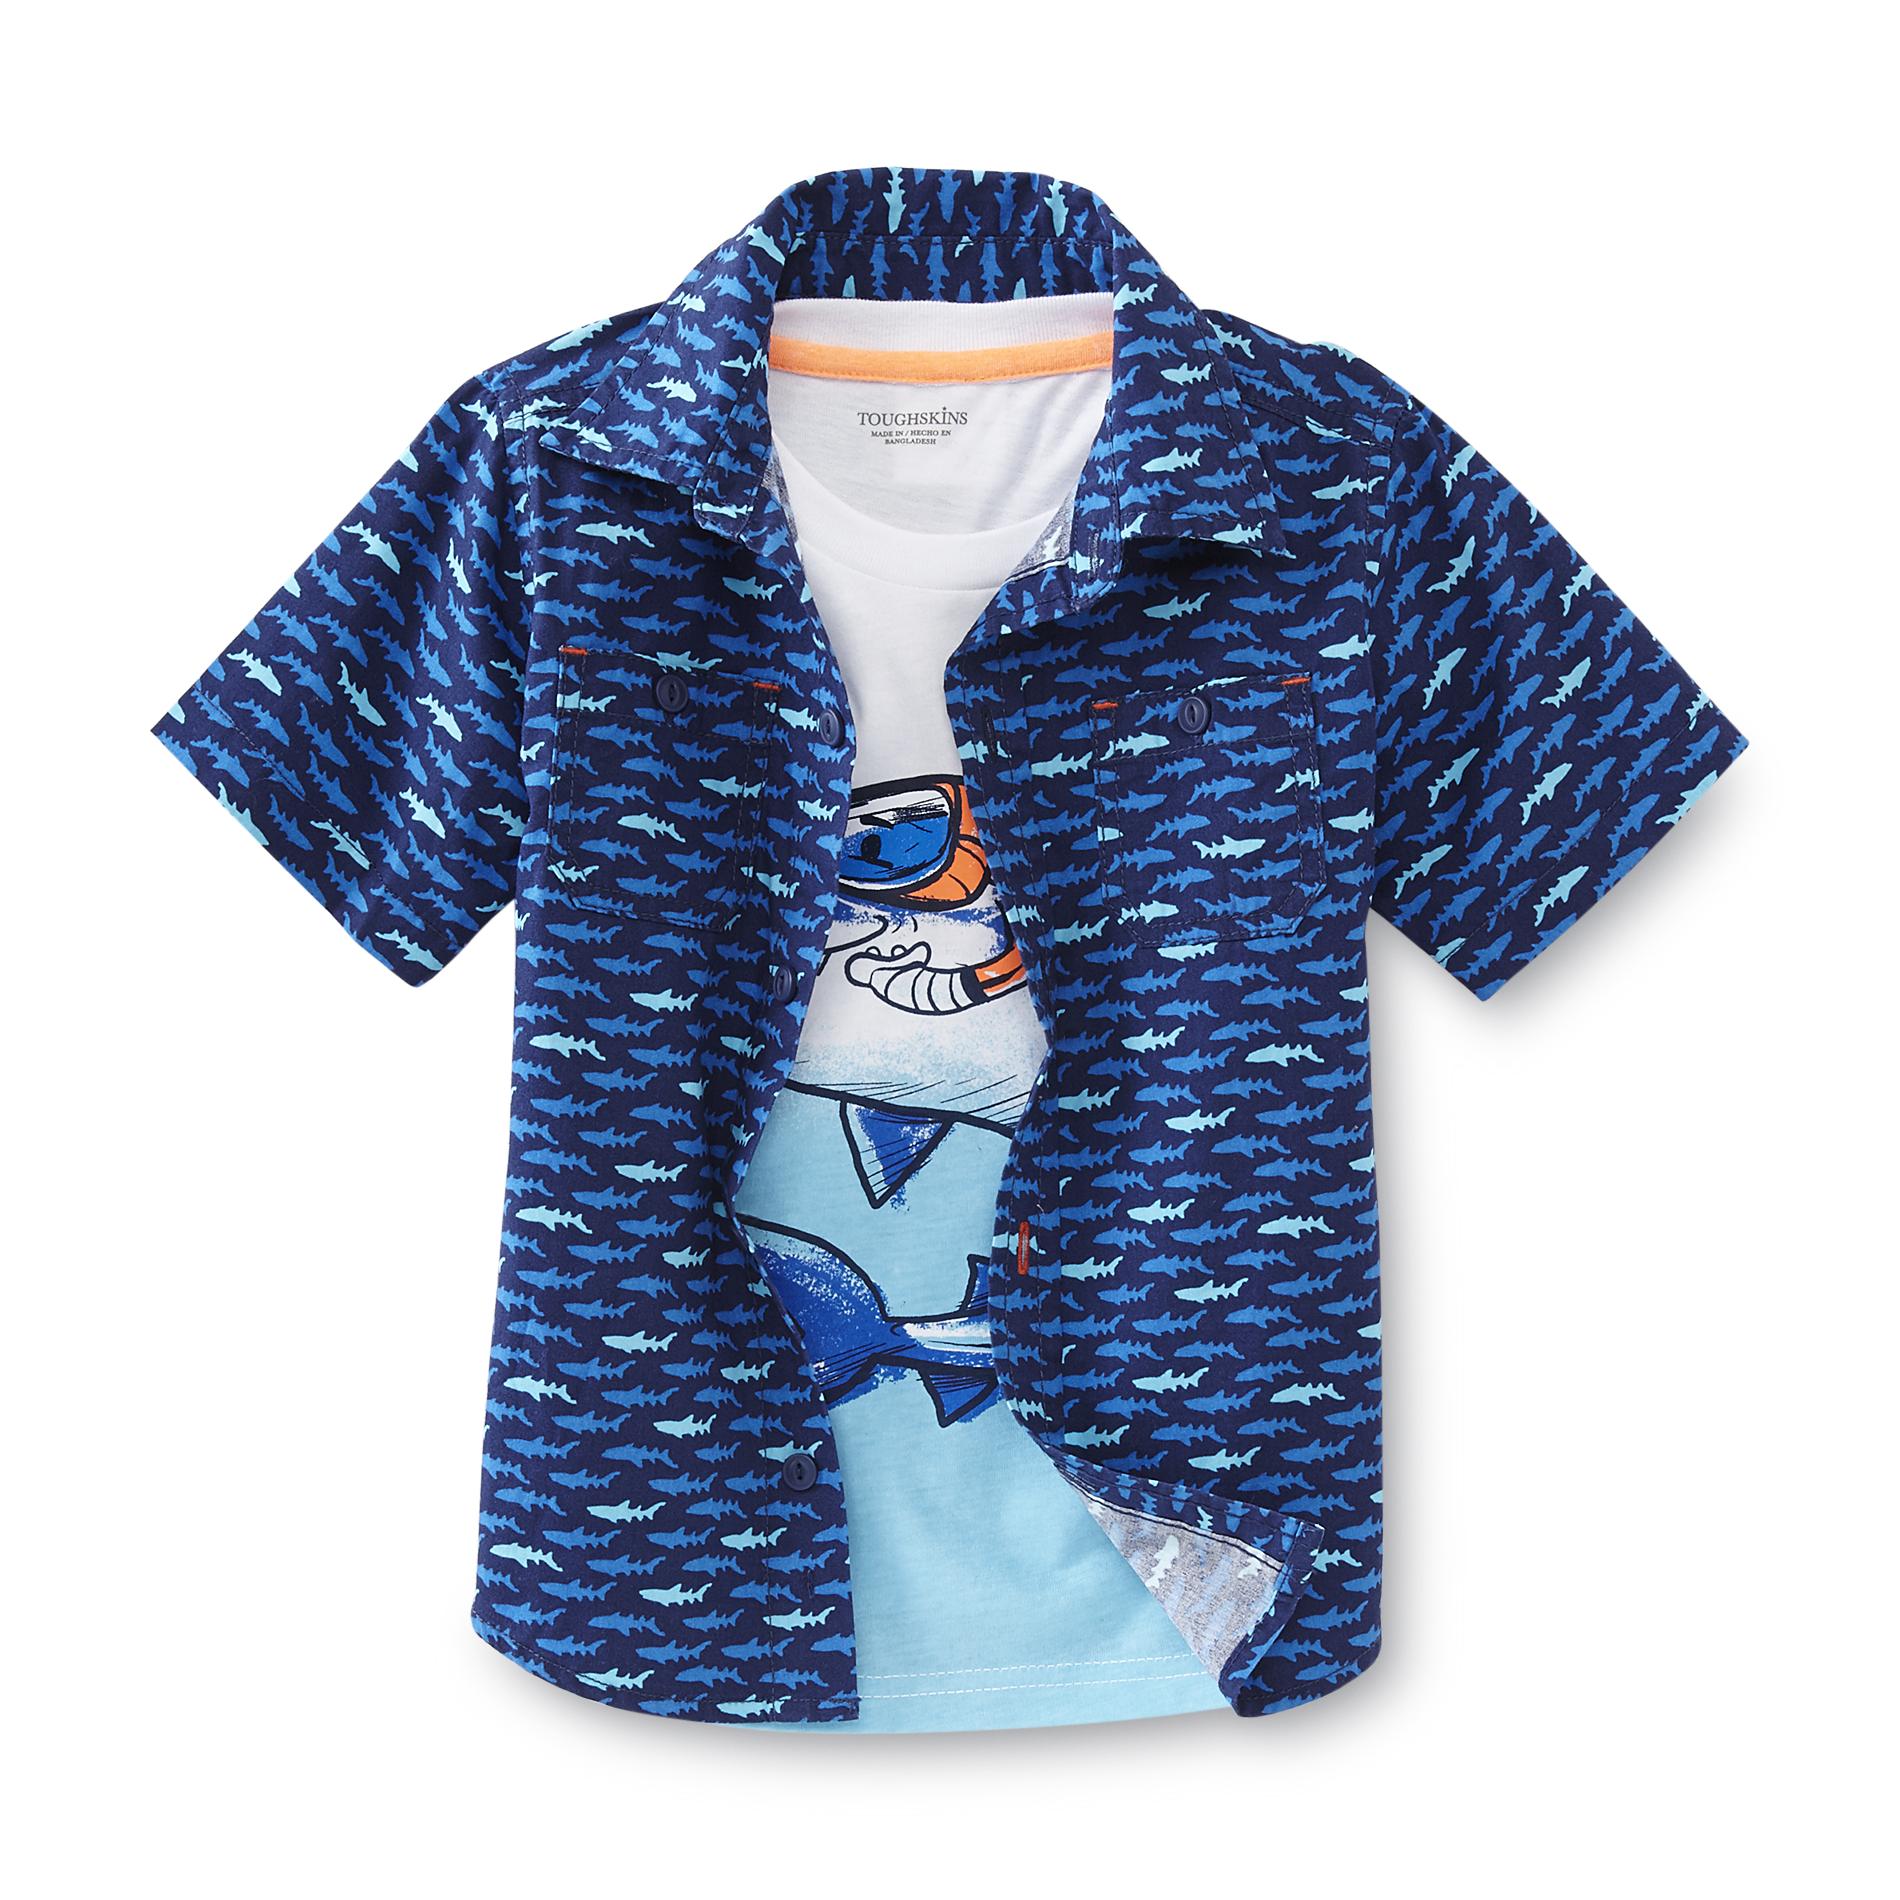 Toughskins Infant & Toddler Boy's Button-Front Shirt & T-Shirt - Sharks